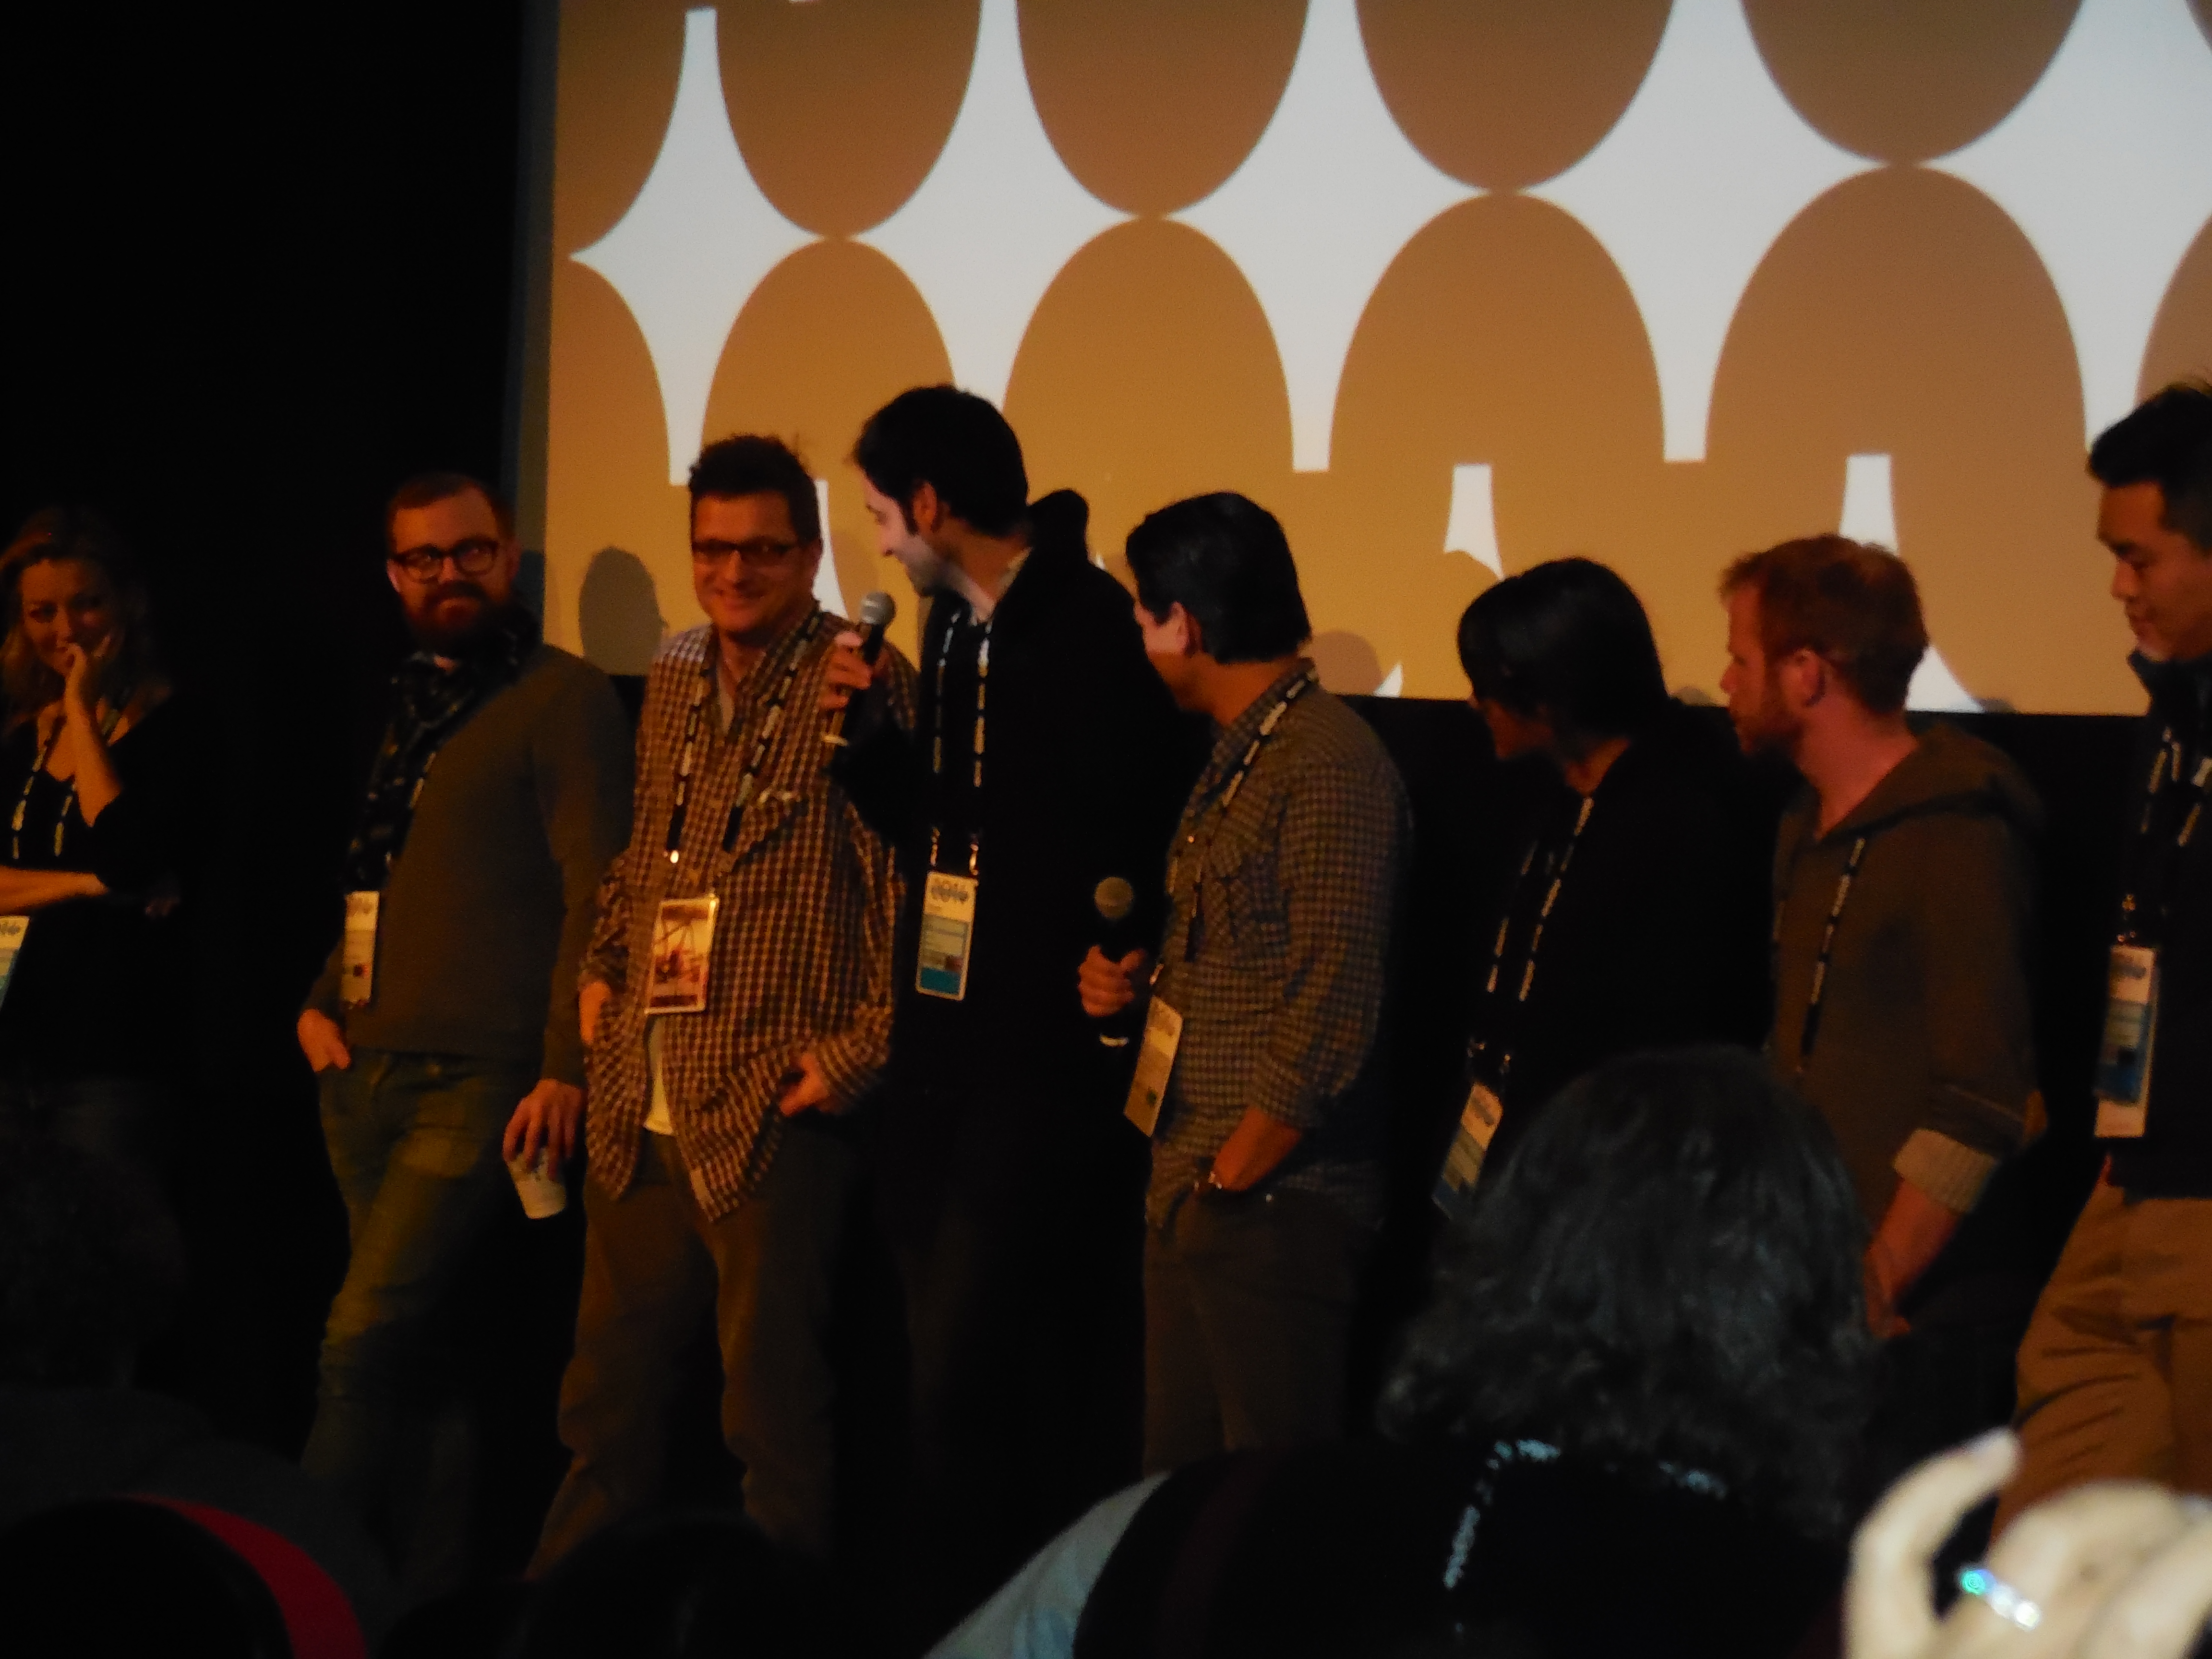 Director's Q&A at Sundance 2014